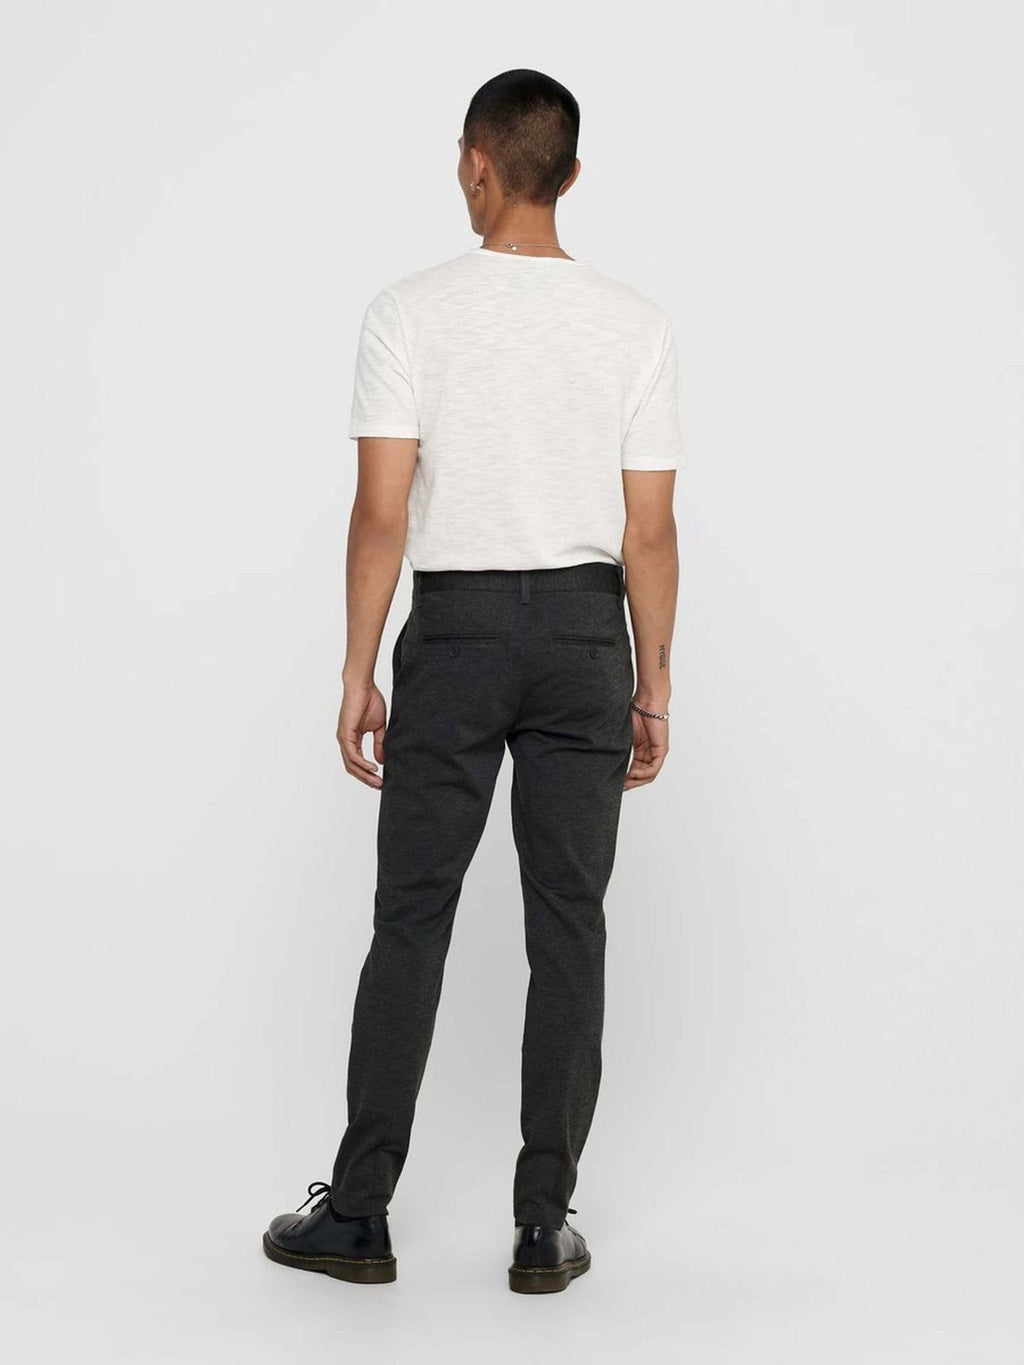 Označite hlače - tamno sive (rastezljive hlače)